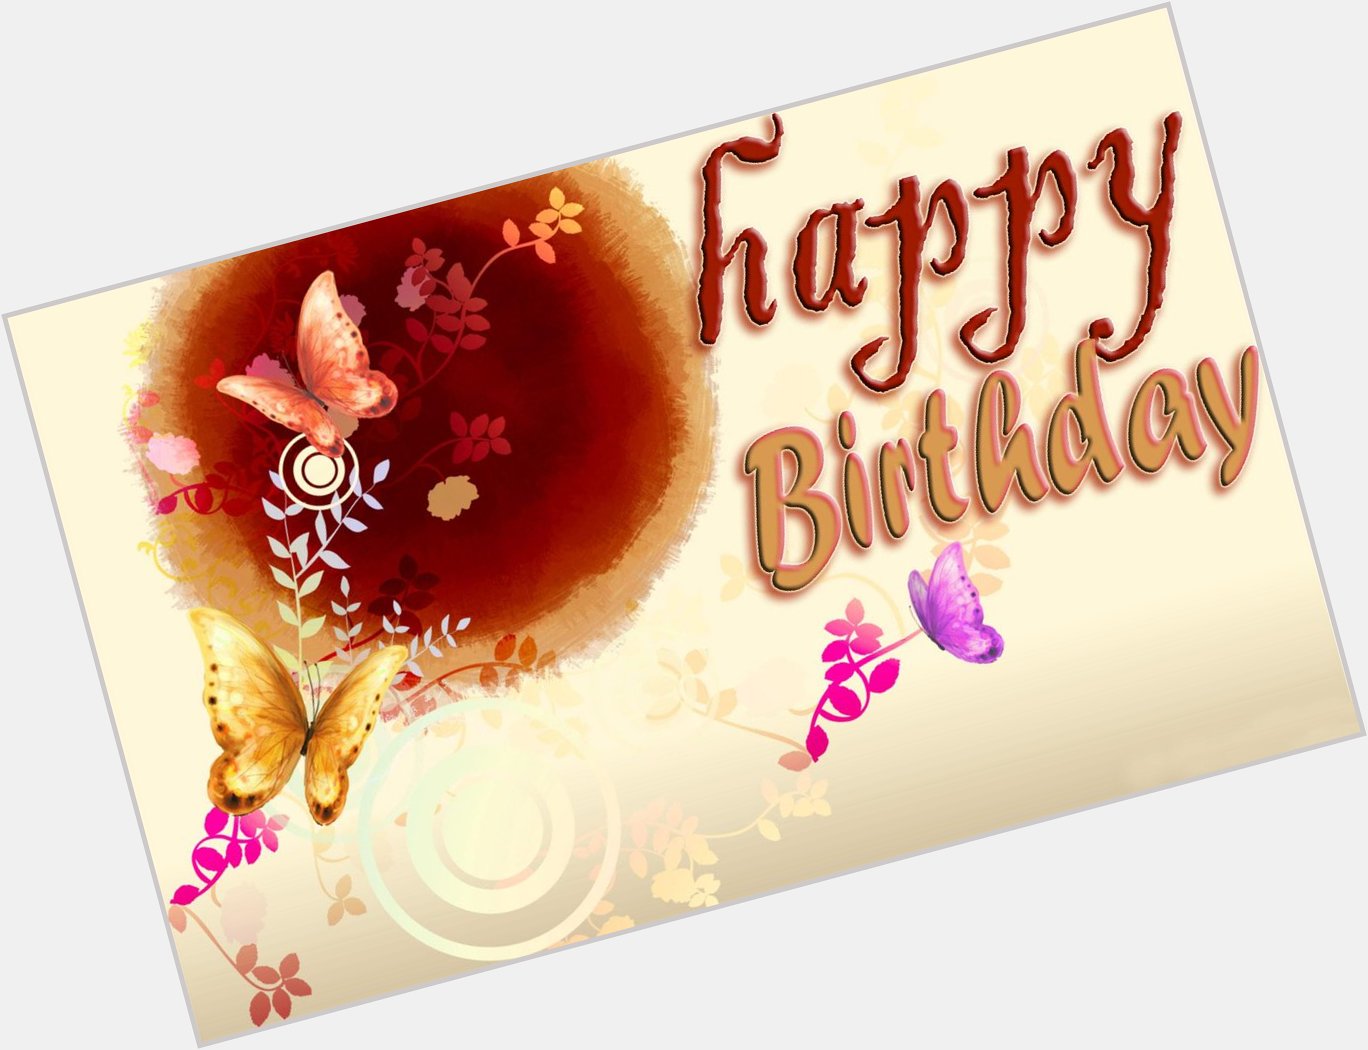  Happy Birthday Shashi Kapoor sir 